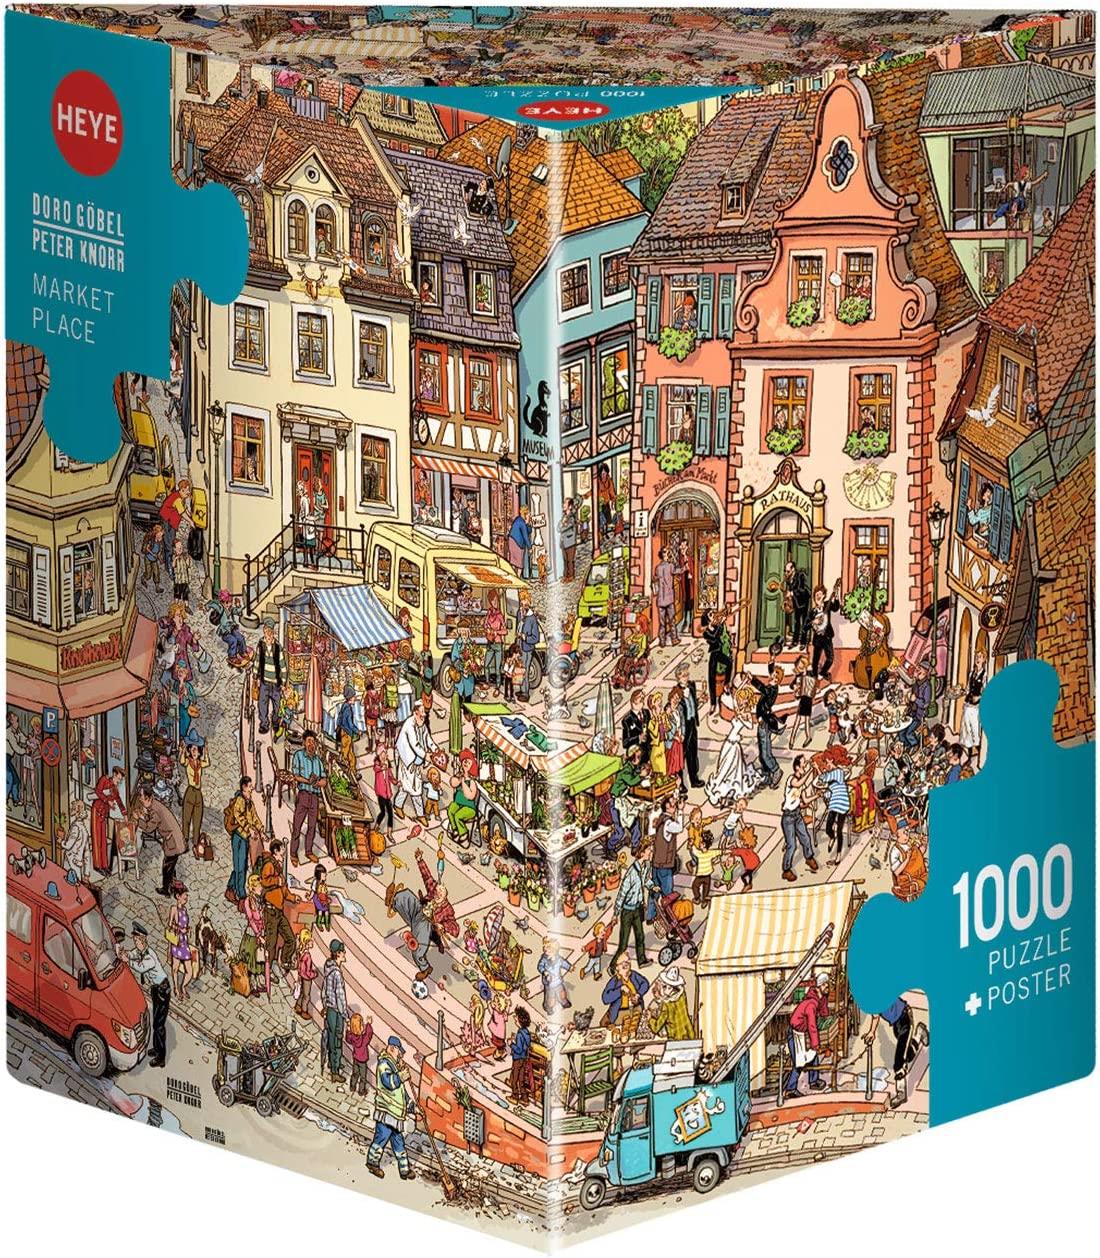 Heye Triangular Market Place Jigsaw Puzzle (1000 Pieces)